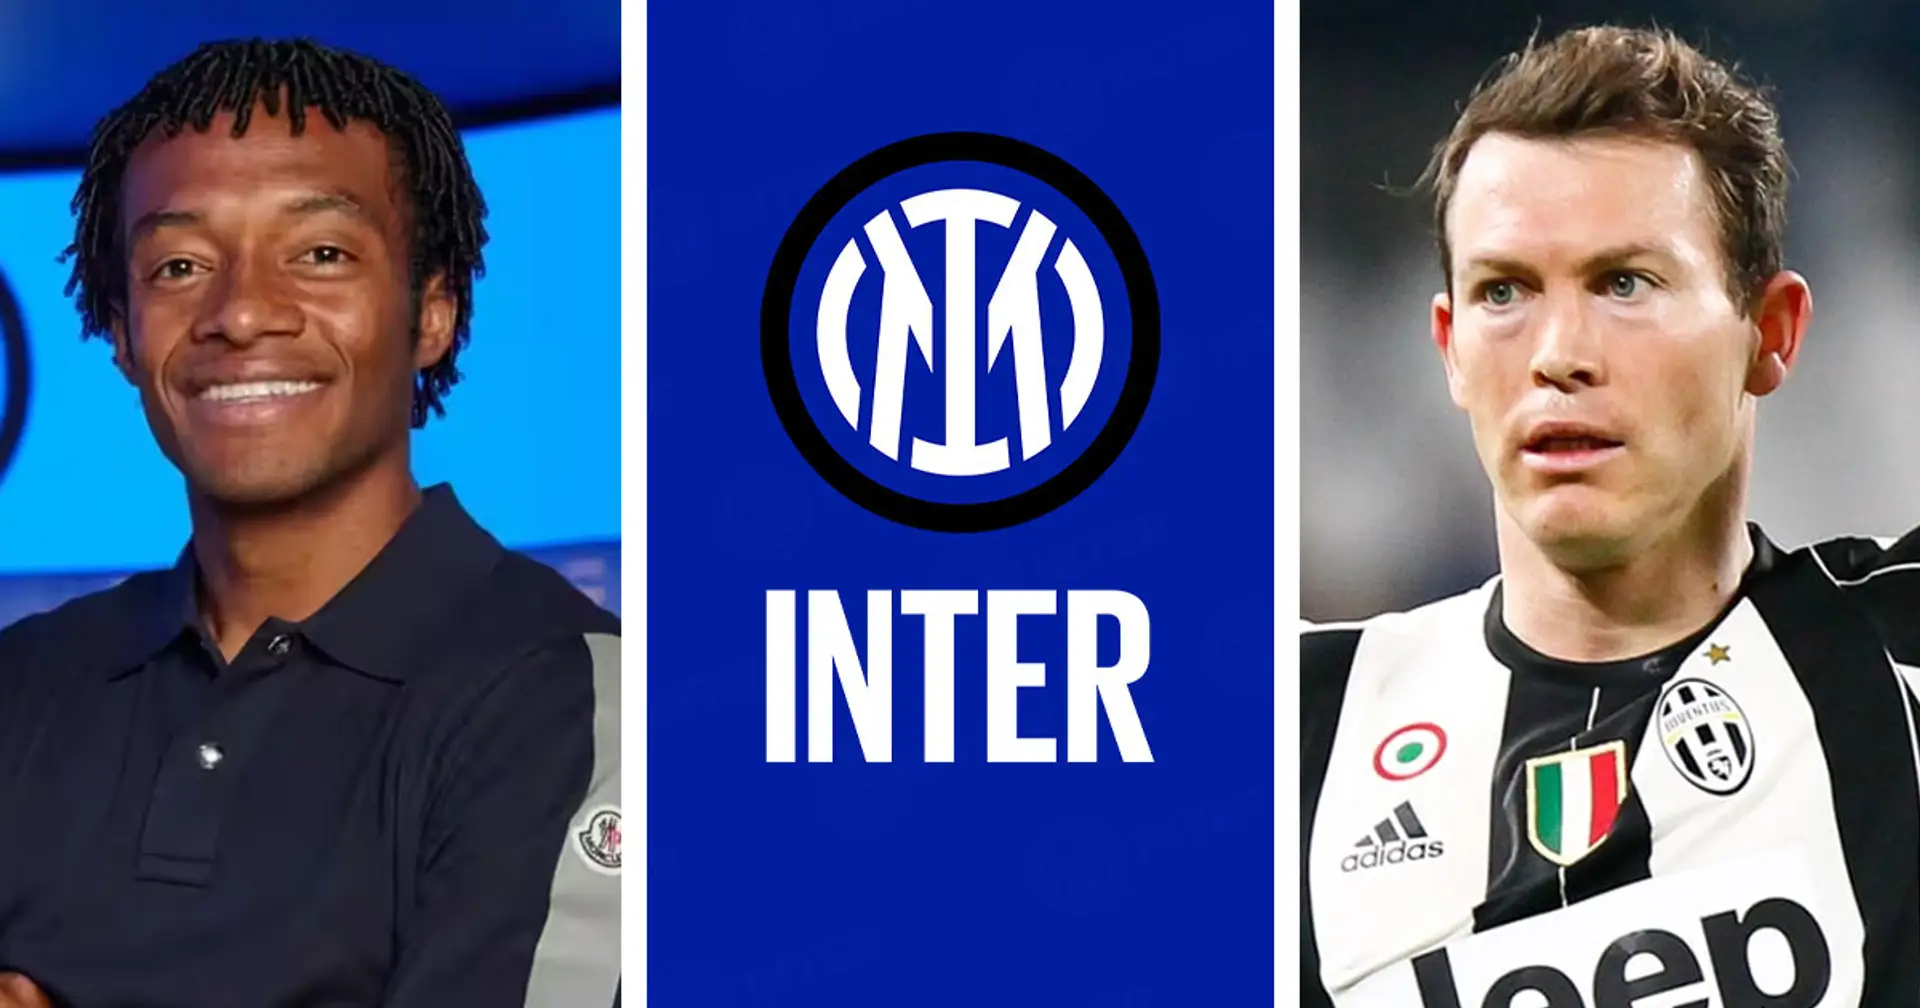 Quando Lichtsteiner (a differenza di Cuadrado) disse NO all'Inter scegliendo l'amore dei tifosi e la Juventus